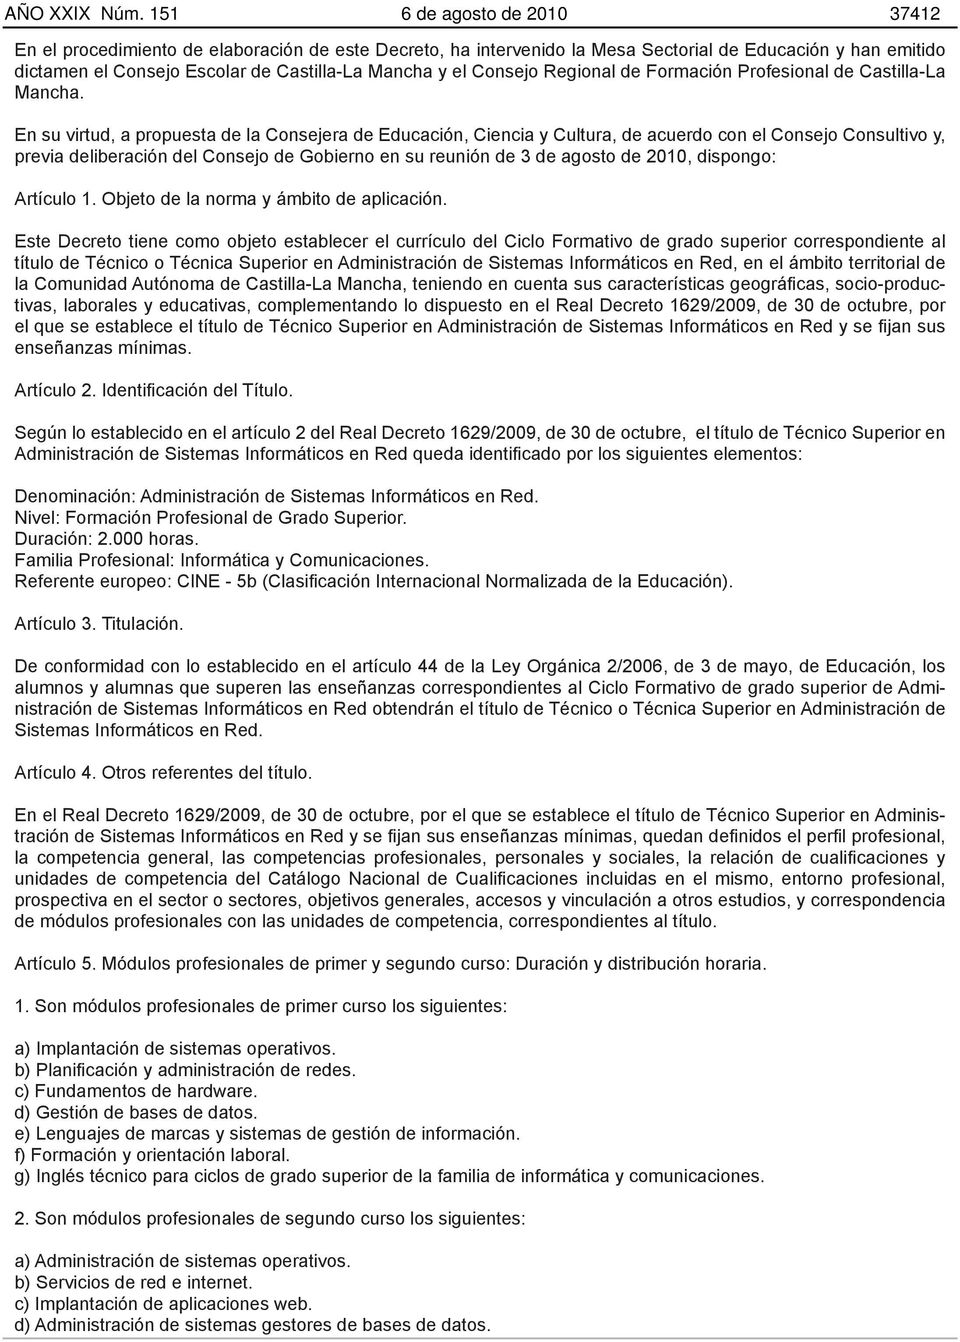 Consejo Regional de Formación Profesional de Castilla-La Mancha.